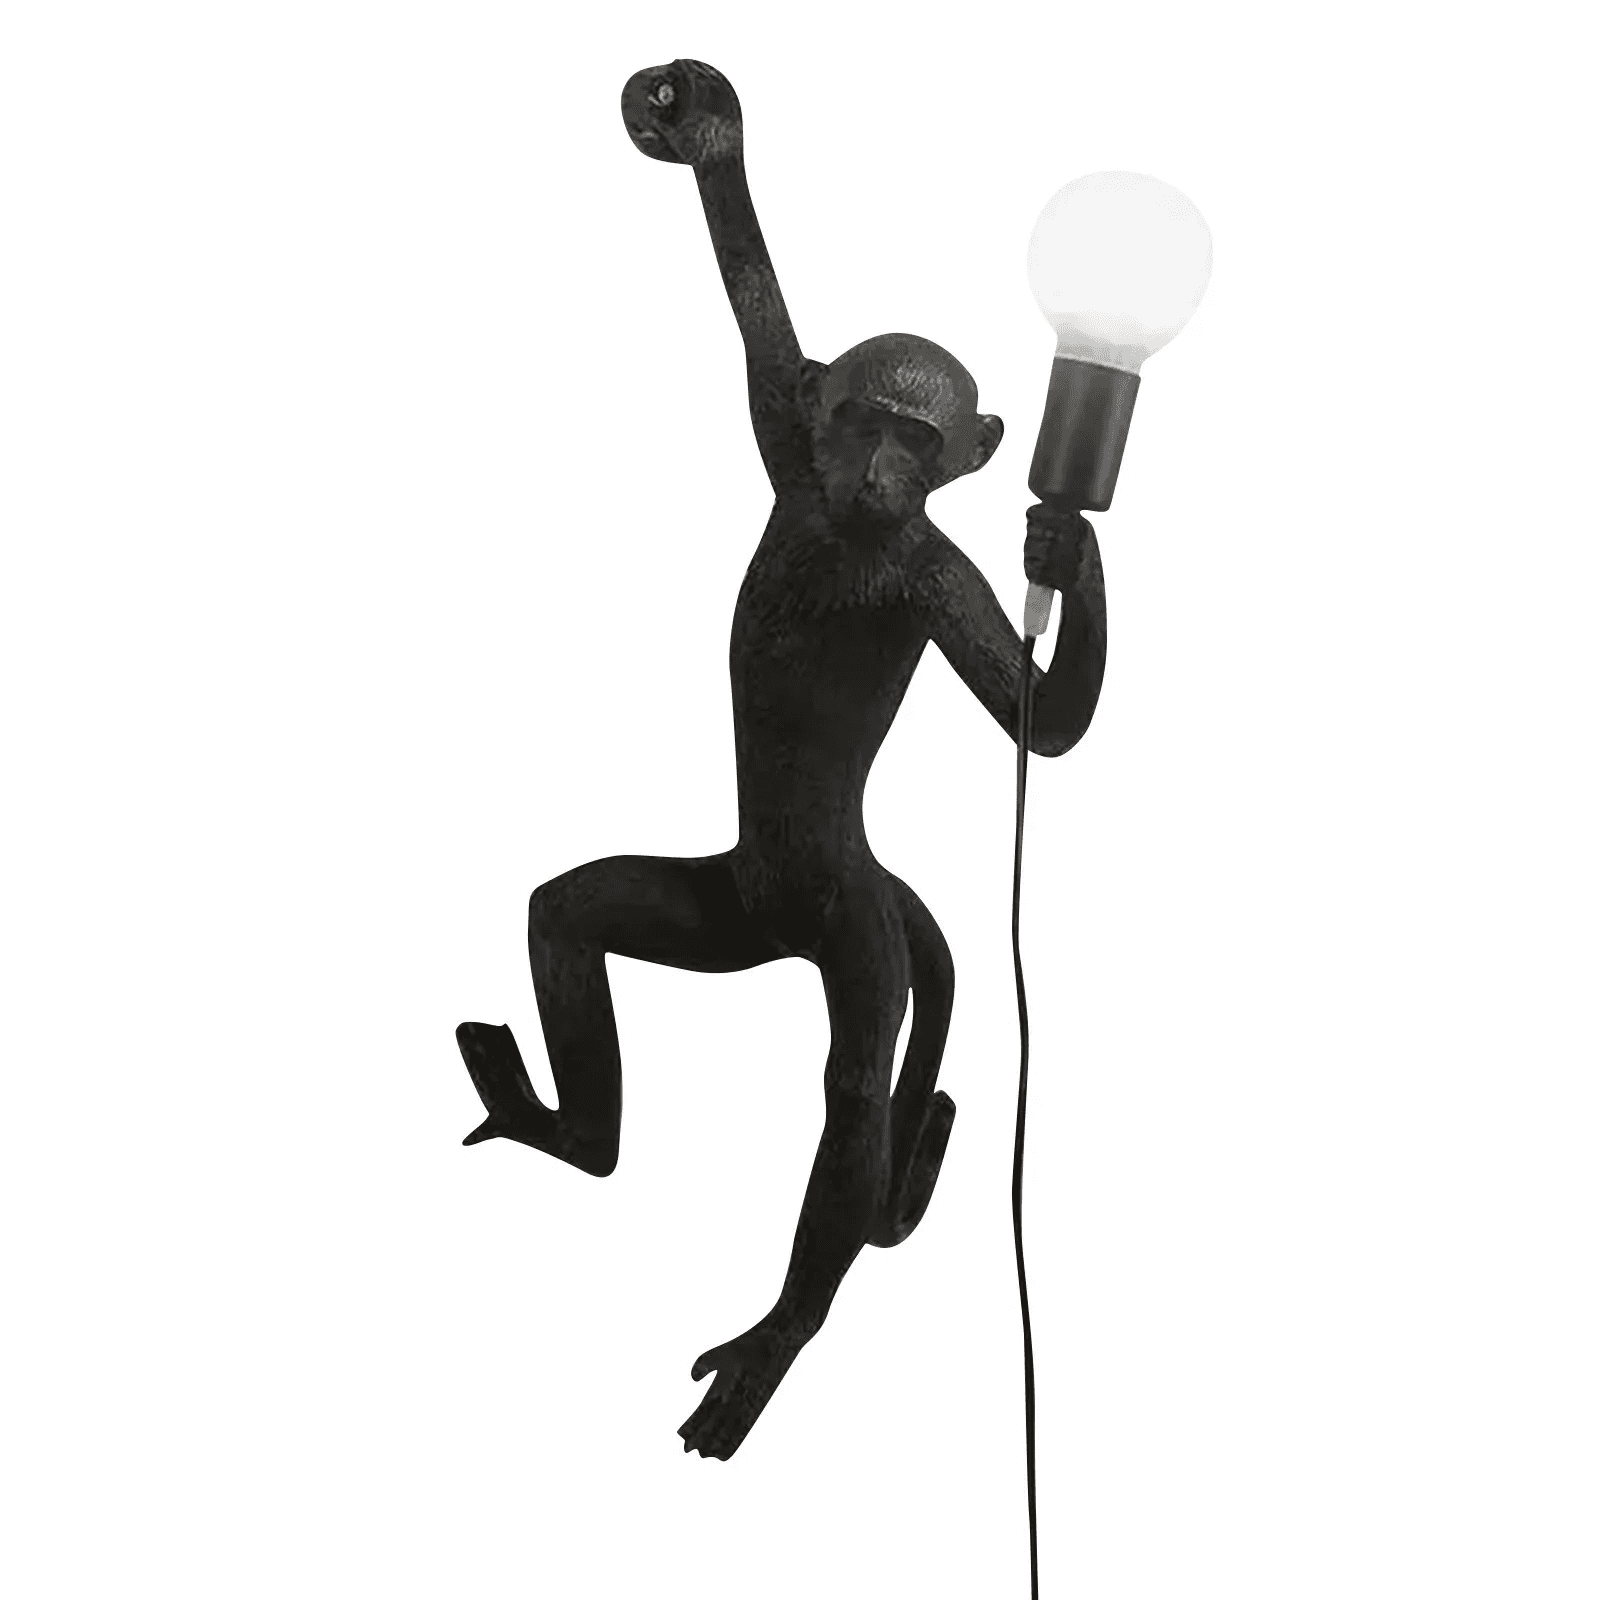 Stylish wall lamp - a monkey - right hand